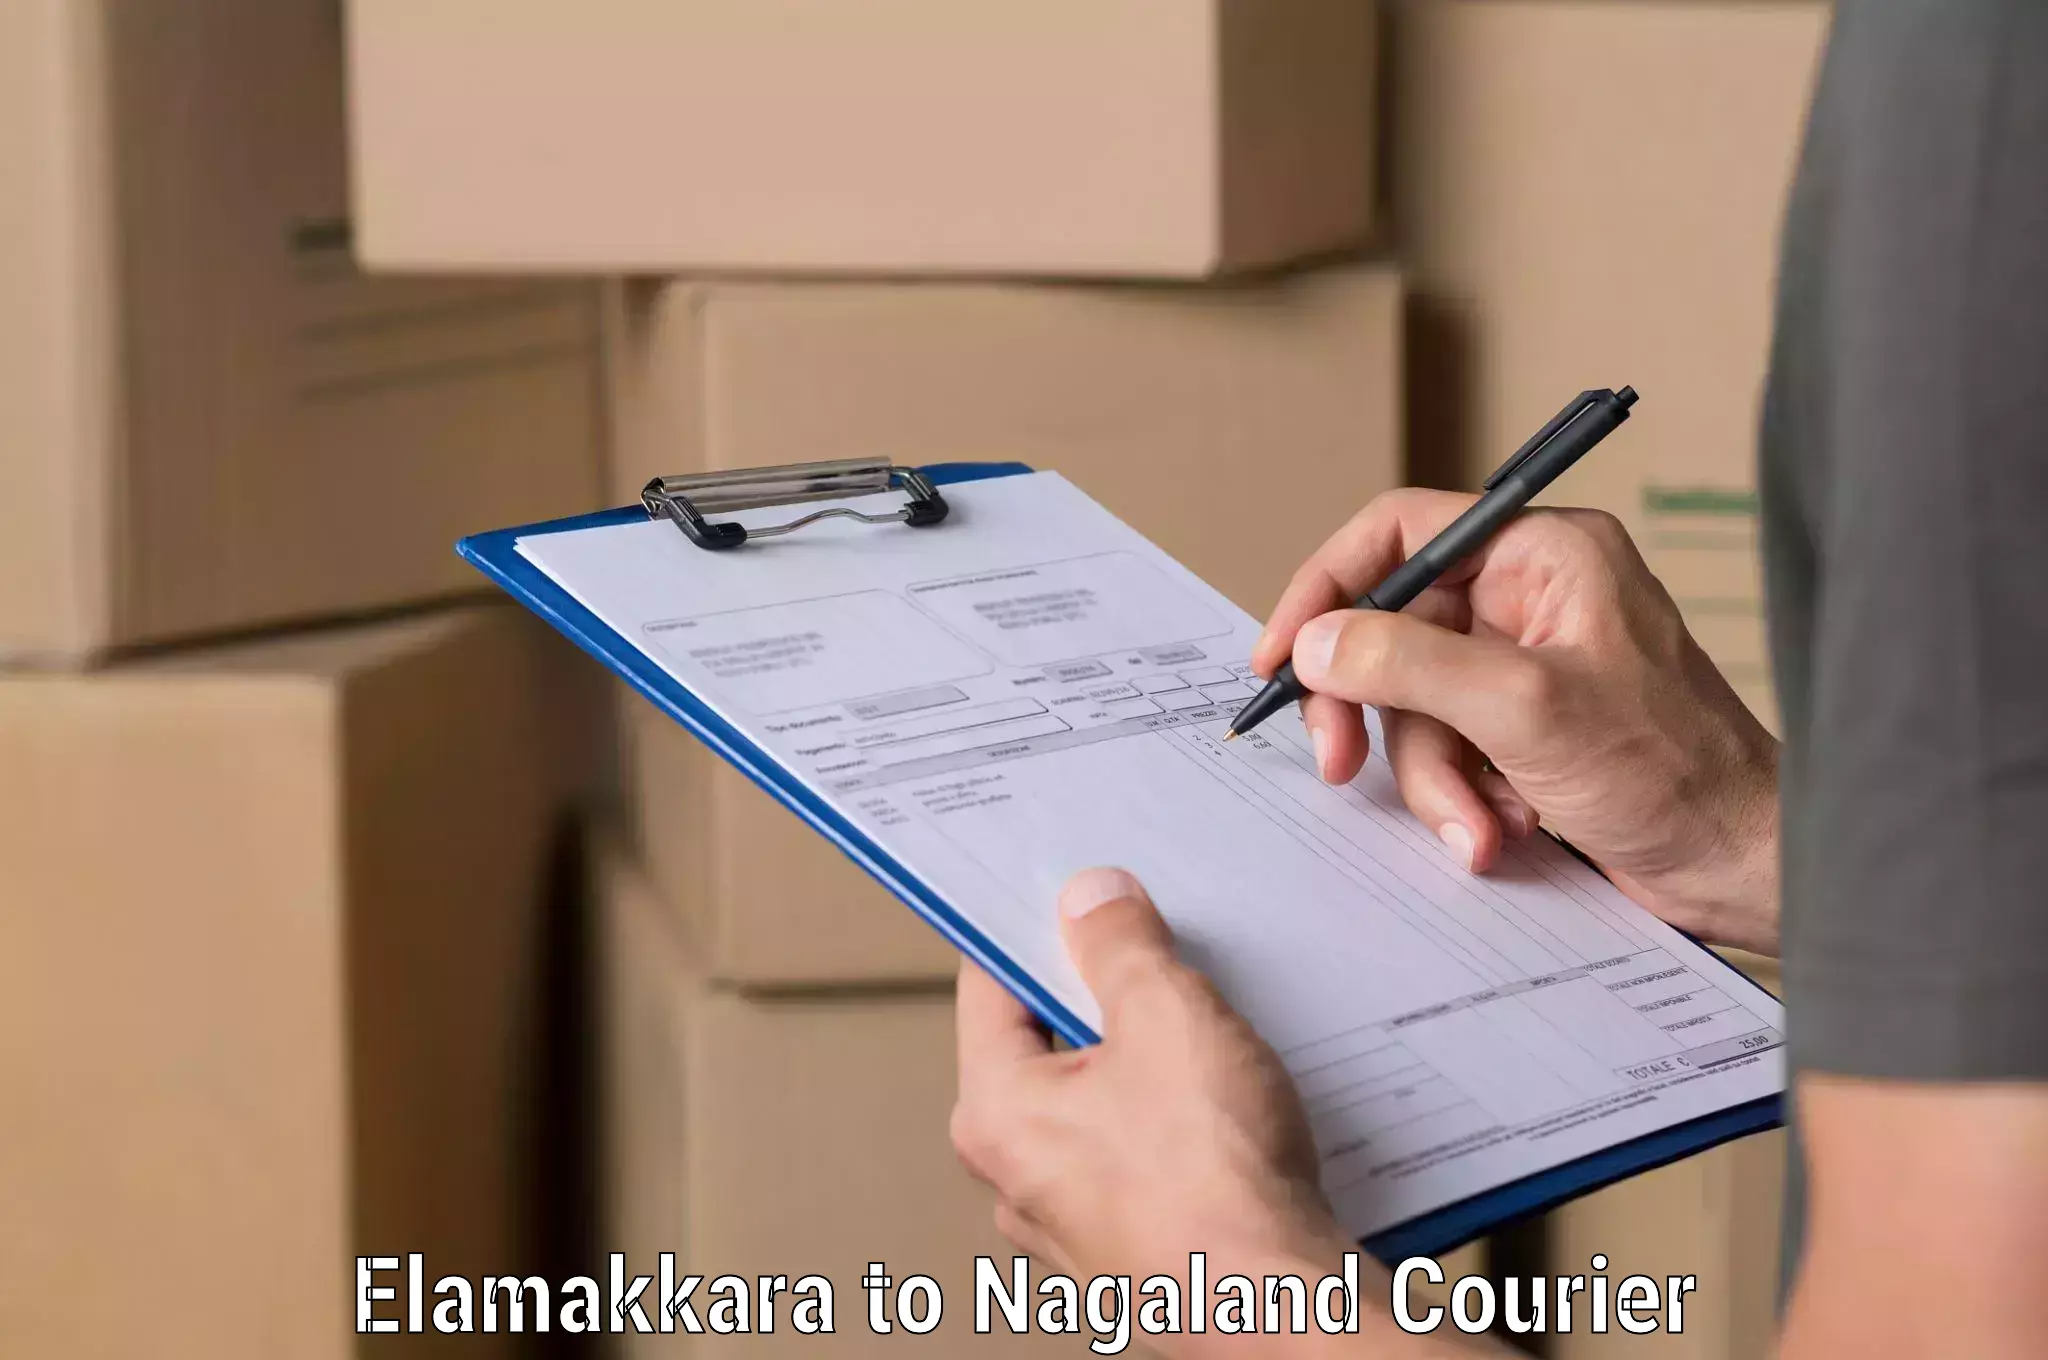 Innovative shipping solutions Elamakkara to NIT Nagaland